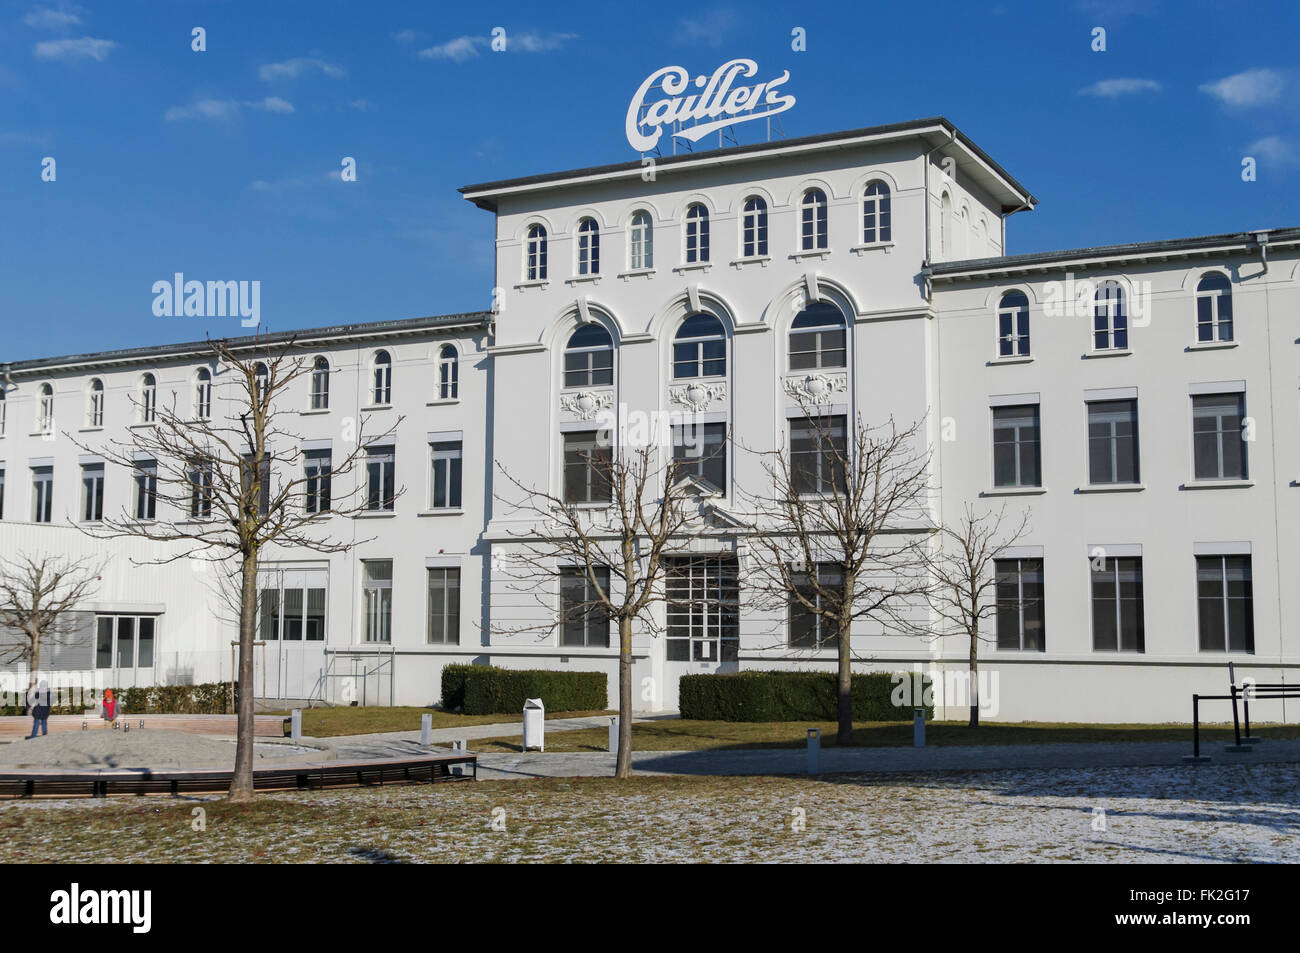 Maison Cailler à Broc, Suisse, est le siège social et usine de chocolat Cailler, hébergeant également un musée du chocolat. Banque D'Images